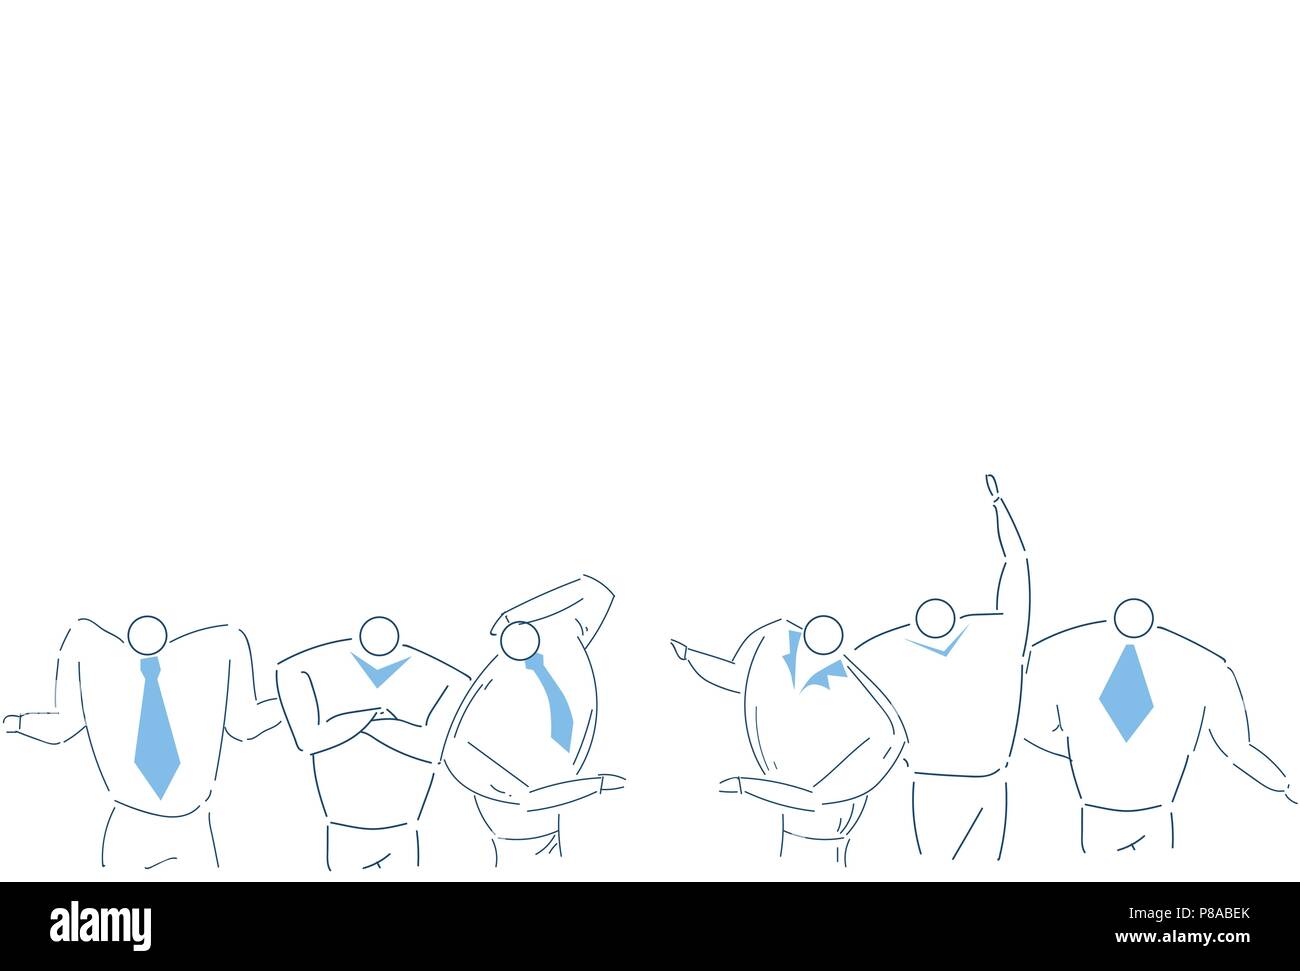 Business People Team Brainstorming zusammen arbeiten Strategie Prozess Konzept weißen Hintergrund Skizze doodle Stock Vektor